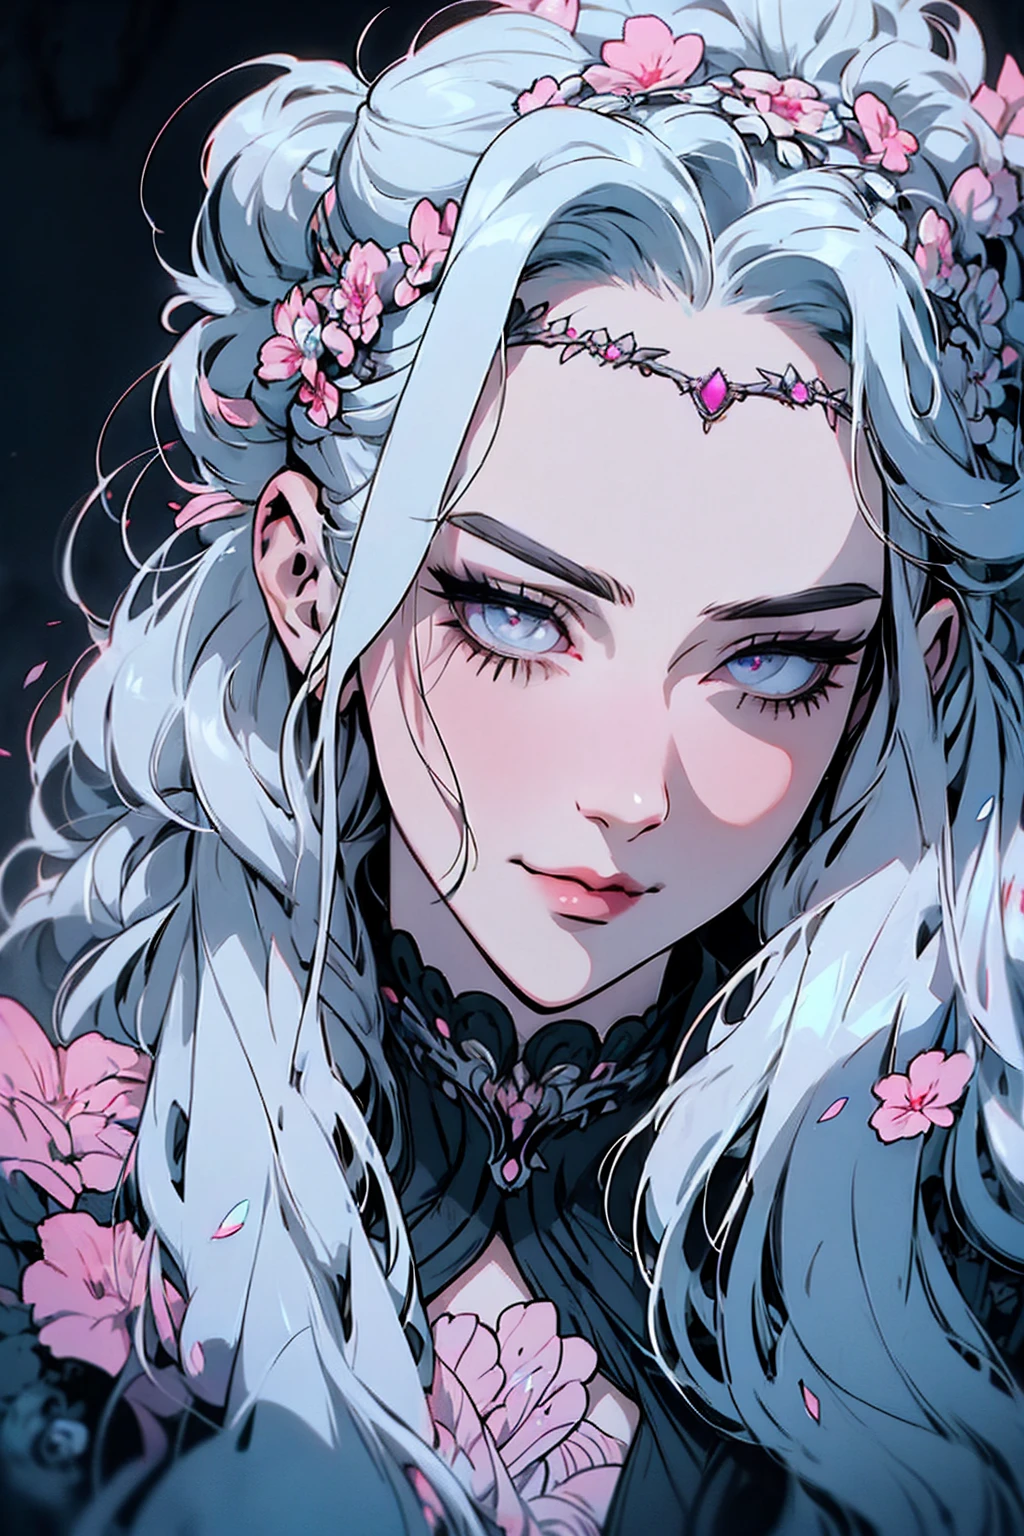 hyper-réaliste d&#39;une femme mystérieuse aux cheveux gris flottants, queue de cheval, yeux d&#39;opale perçants, et une délicate couronne florale, sourire délicat, haut du corps